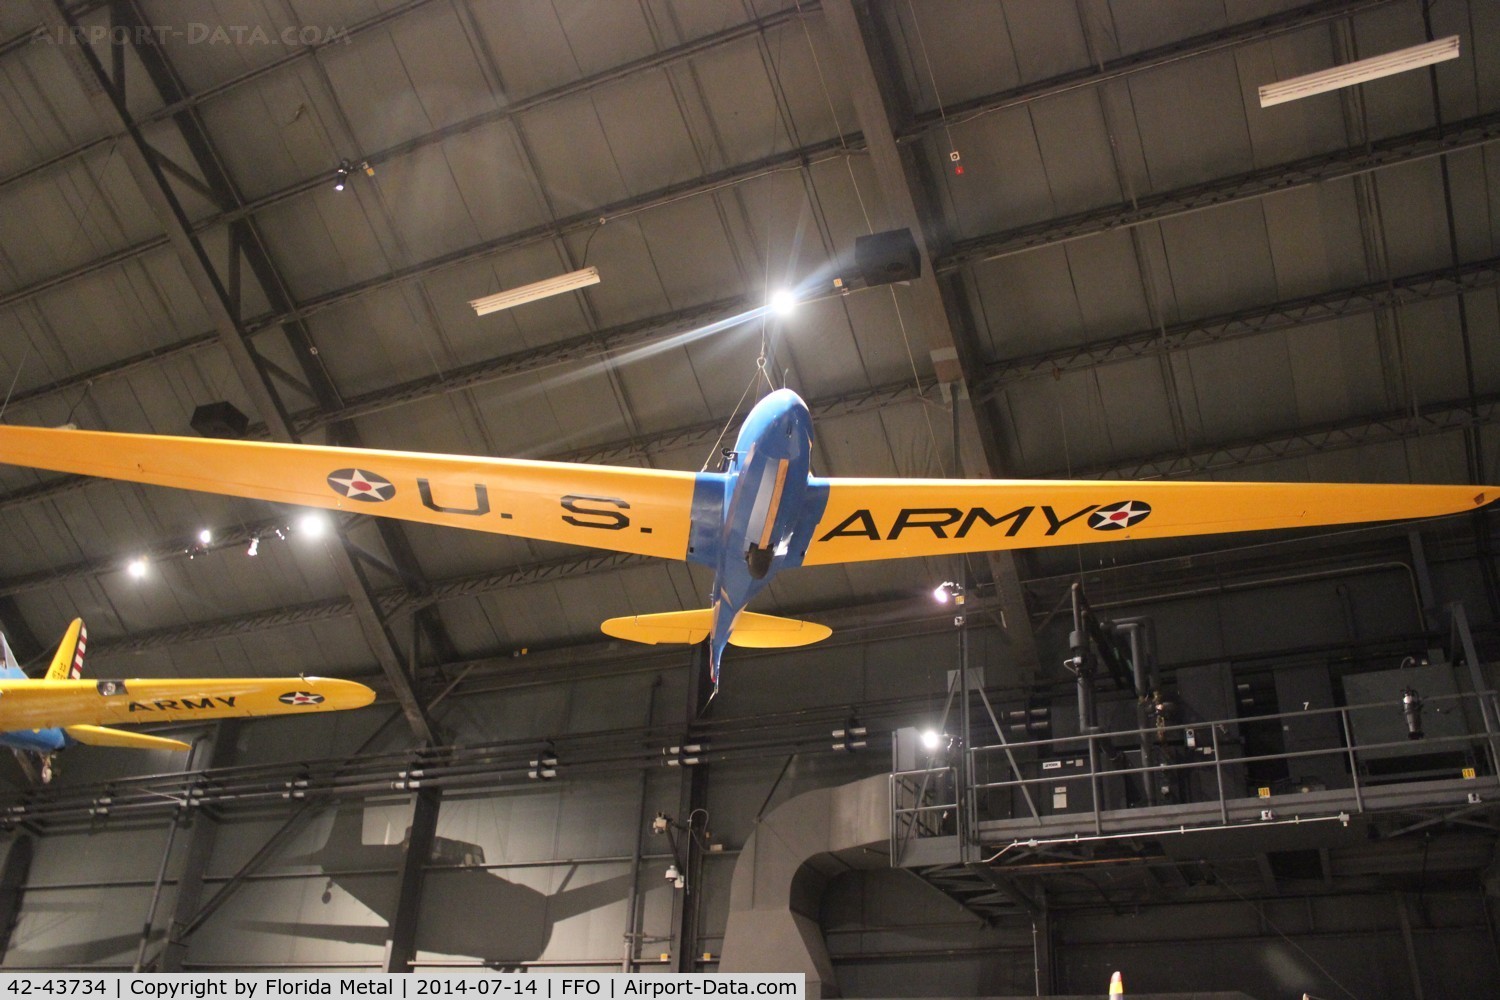 42-43734, 1942 Laister-Kauffman TG-4 C/N Not found 42-43734, TG-4 glider